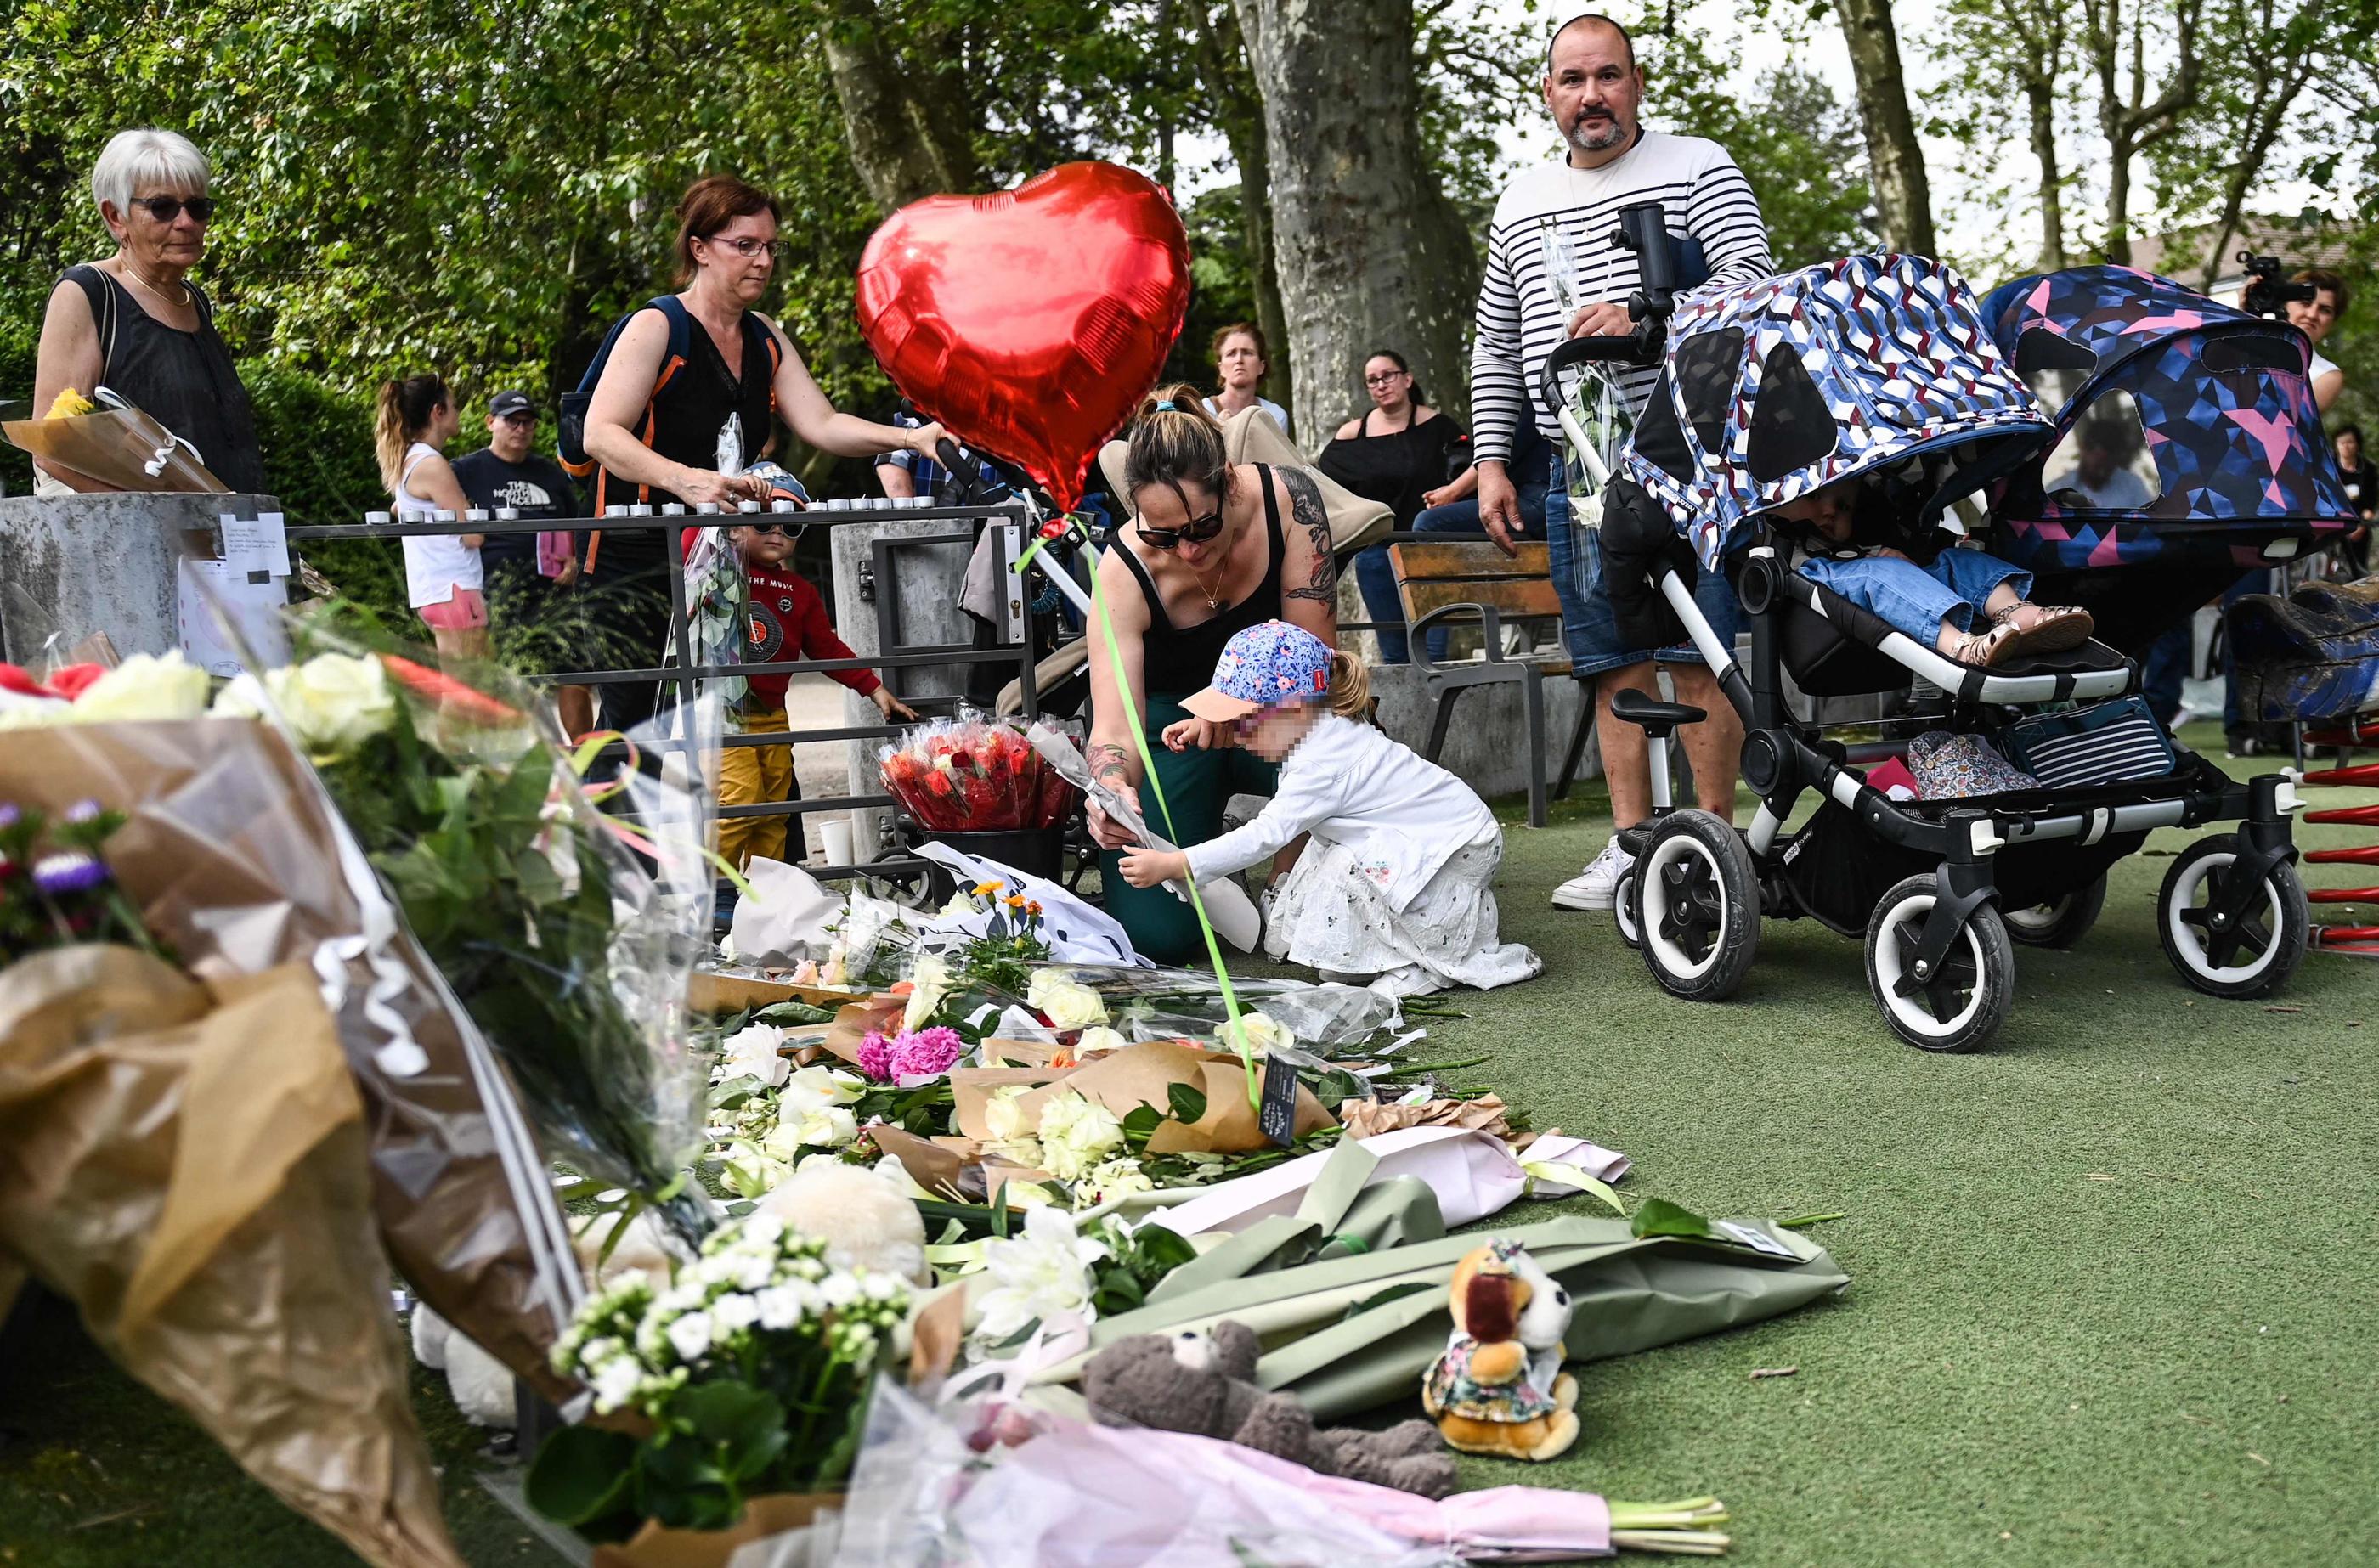 Deux enfants blessés lors de l'attaque sont toujours en urgence vitale, selon le porte-parole du gouvernement Olivier Véran. AFP/Olivier Chassignole